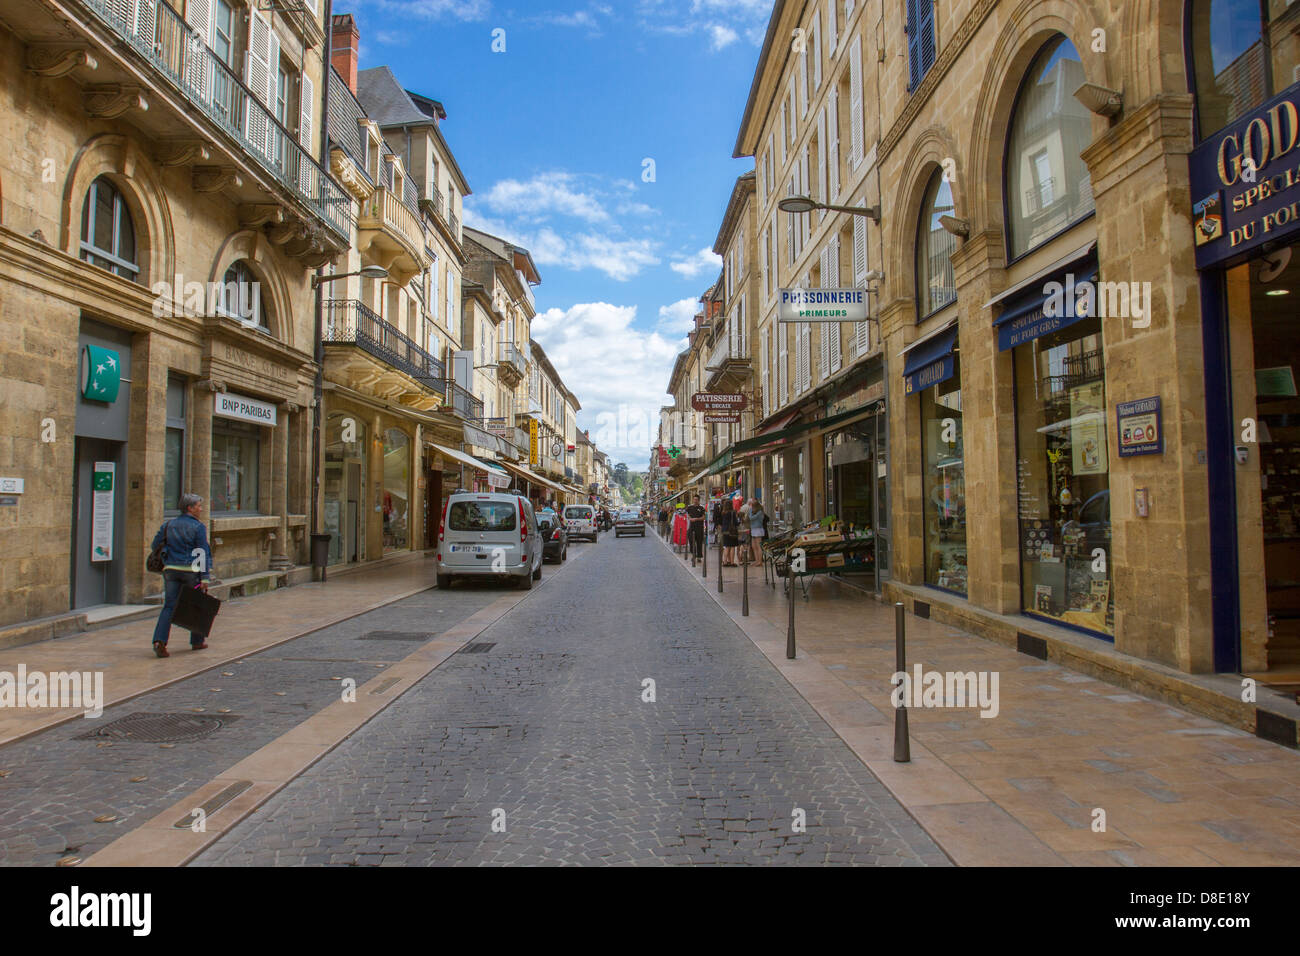 Rue de la République, la rue principale de Sarlat, bordée de magasins dans la ville médiévale de bâtiments en grès, Dordogne France Banque D'Images